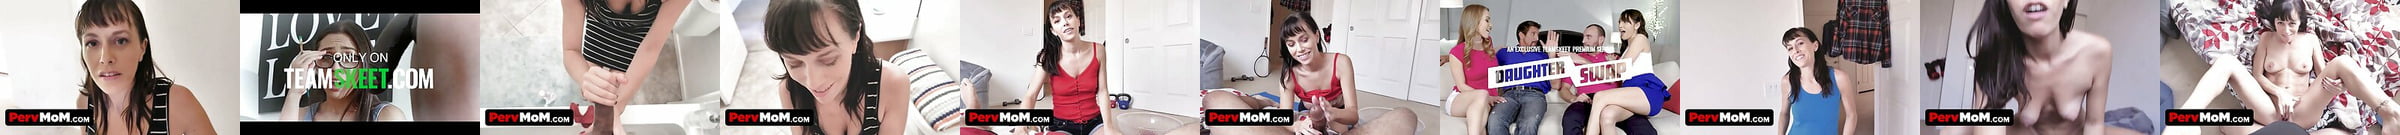 Featured Pervmom Porn Videos Pervmomcom XHamster